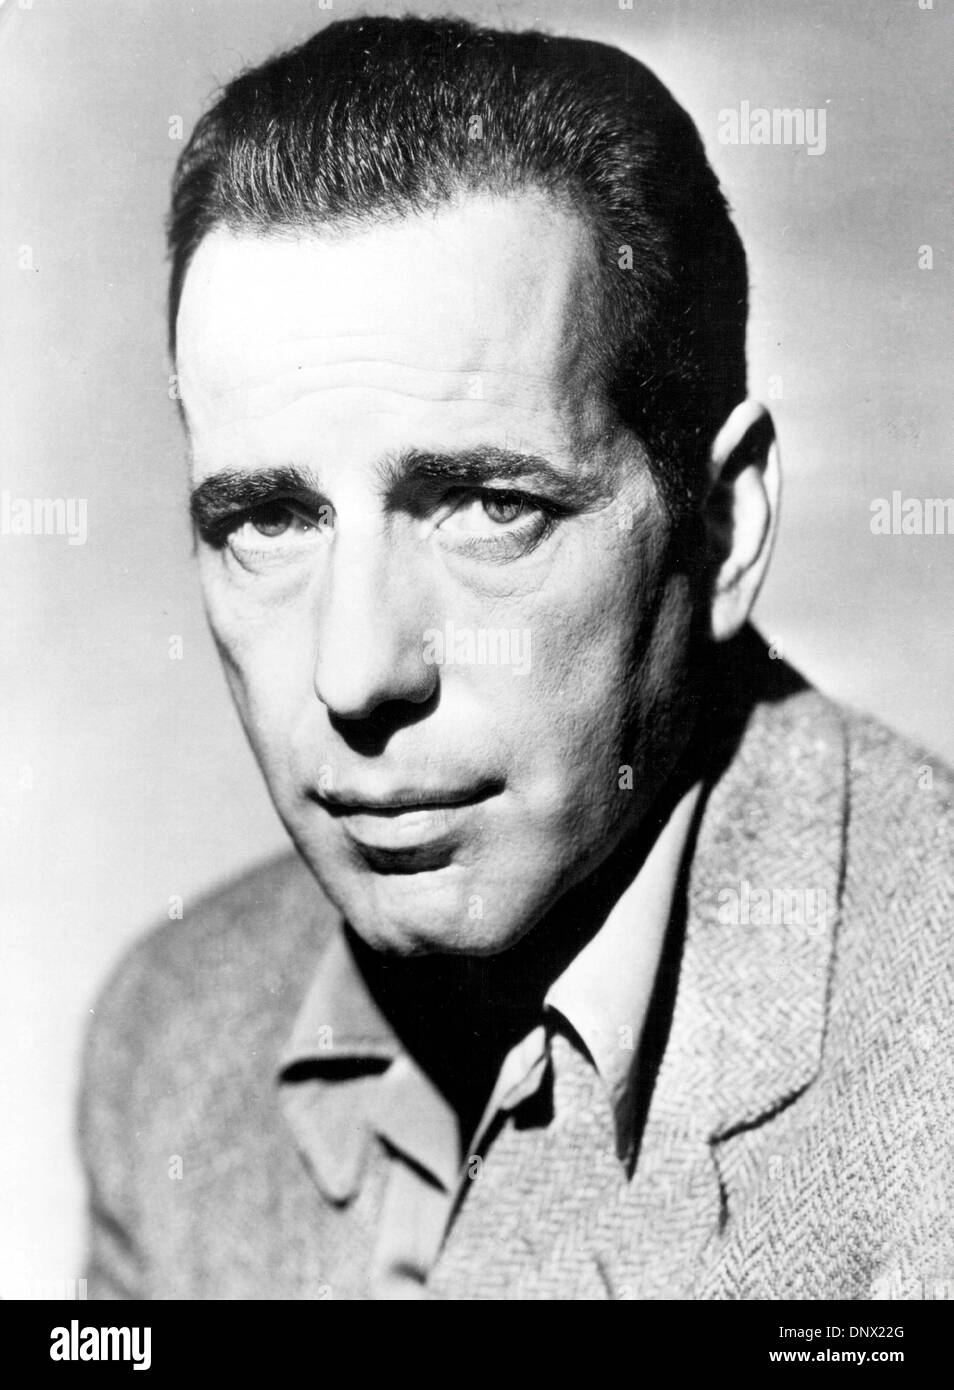 1 janvier 1940 - Hollywood, CA, États-Unis - la quintessence du tough guy, Humphrey Bogart reste l'une des légendes les plus durables de Hollywood et l'une des stars les plus aimés de tous les temps. Bien qu'une grande célébrité au cours de sa propre vie, l'appel de Bogart a augmenté de manière quasi exponentielle dans les années qui ont suivi sa mort, et son disque dur à l'inimitable - persona-mordu, cynique et énigmatique - Banque D'Images